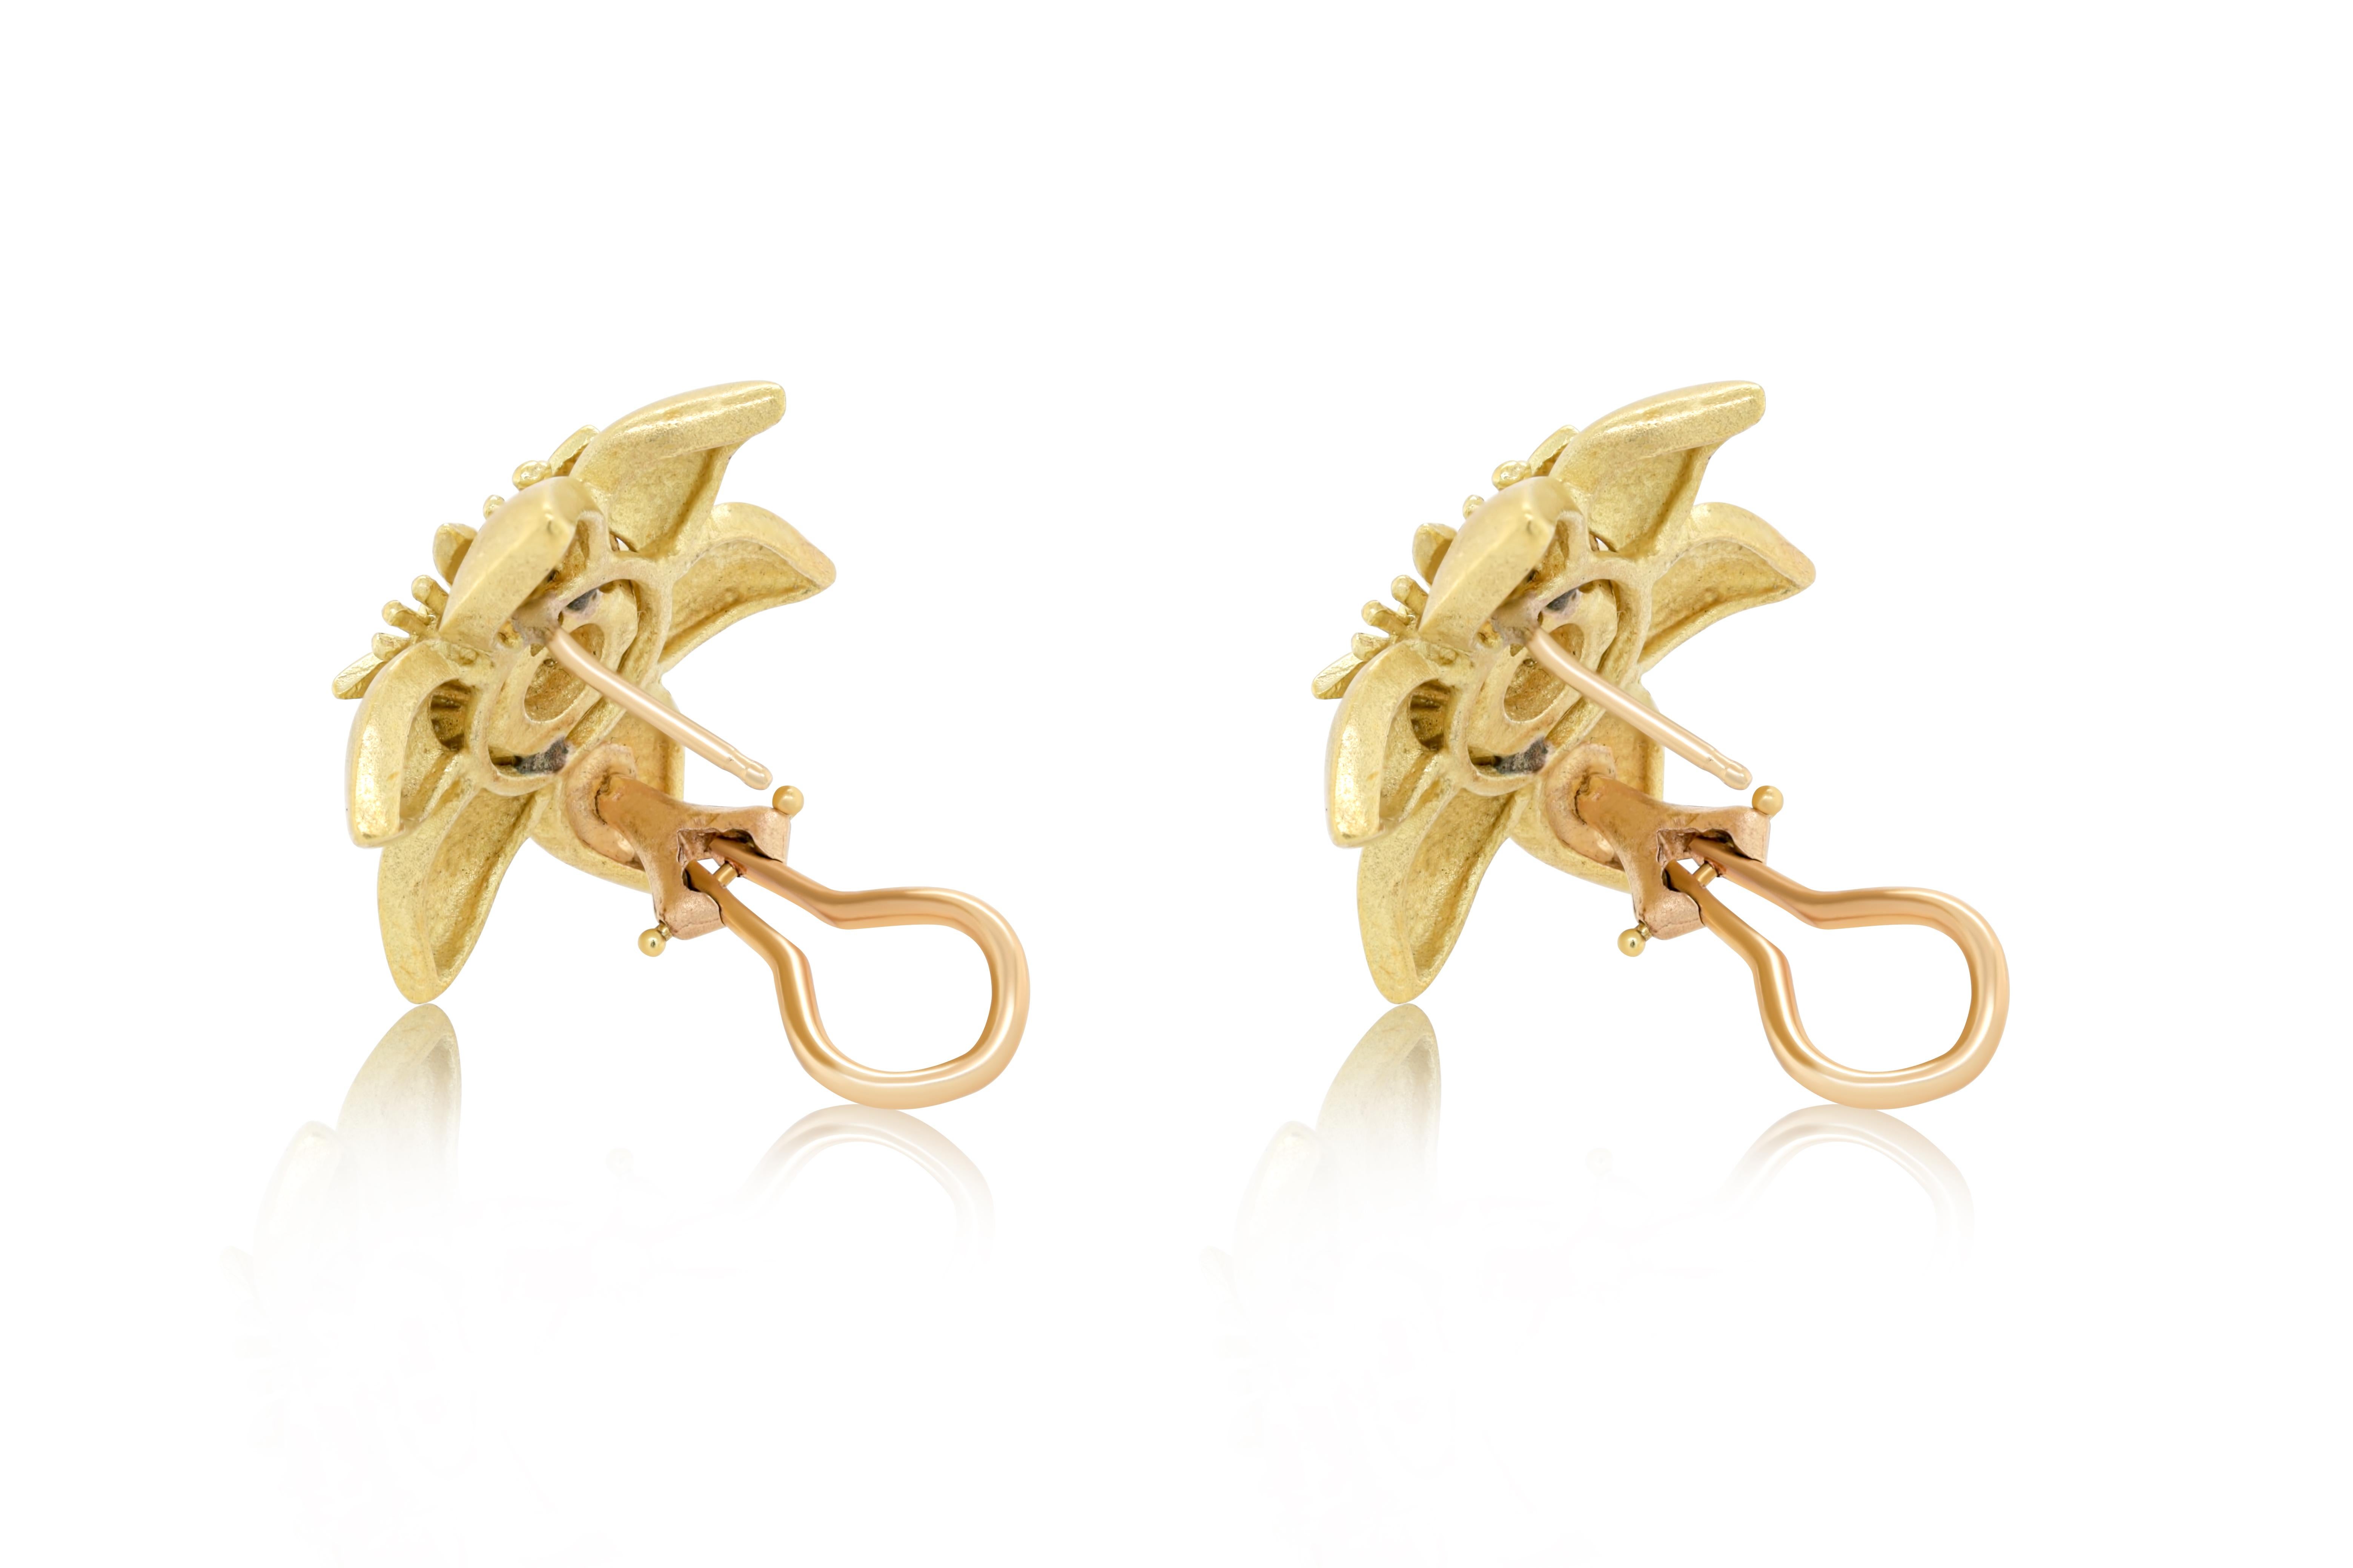 Boucles d'oreilles fleurs en or jaune 18 carats avec 0.70 cts tw de diamants ronds au centre.
A&M est un fournisseur de premier plan de bijoux fins de qualité supérieure depuis plus de 35 ans.
Diana M-One est un magasin unique pour tous vos achats